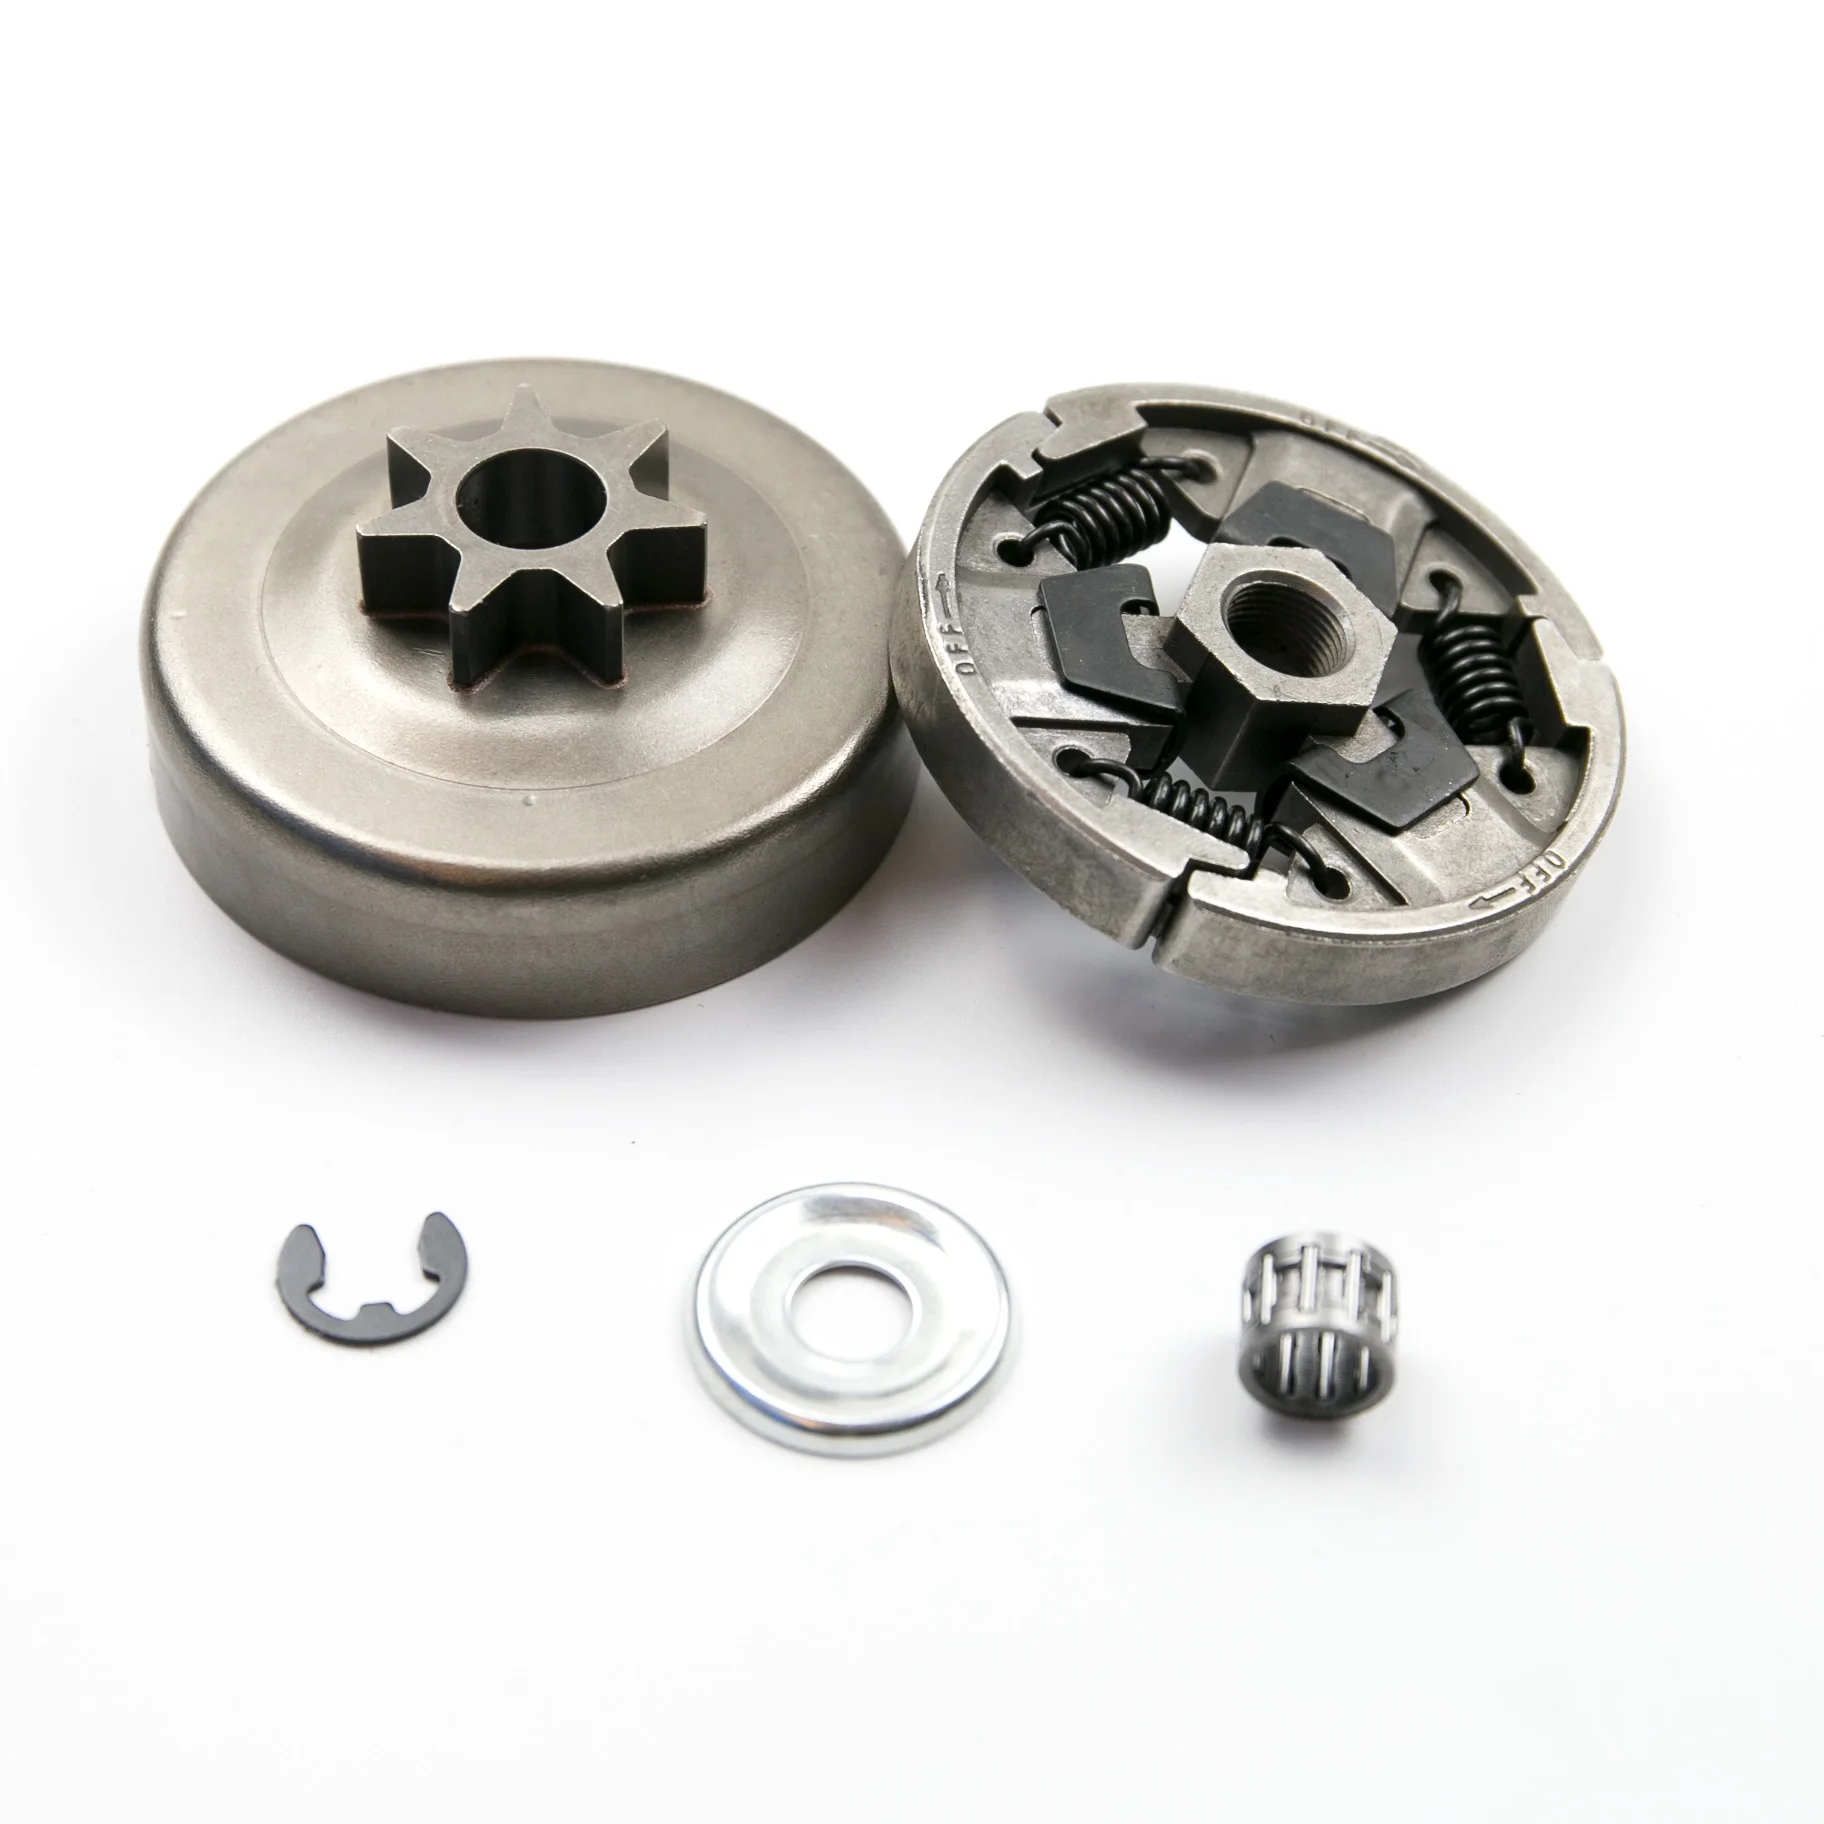 Details about   Full AV Buffer Screws Kit  For Stihl 026 024 MS240 MS260 Chainsaw #1121 790 9912